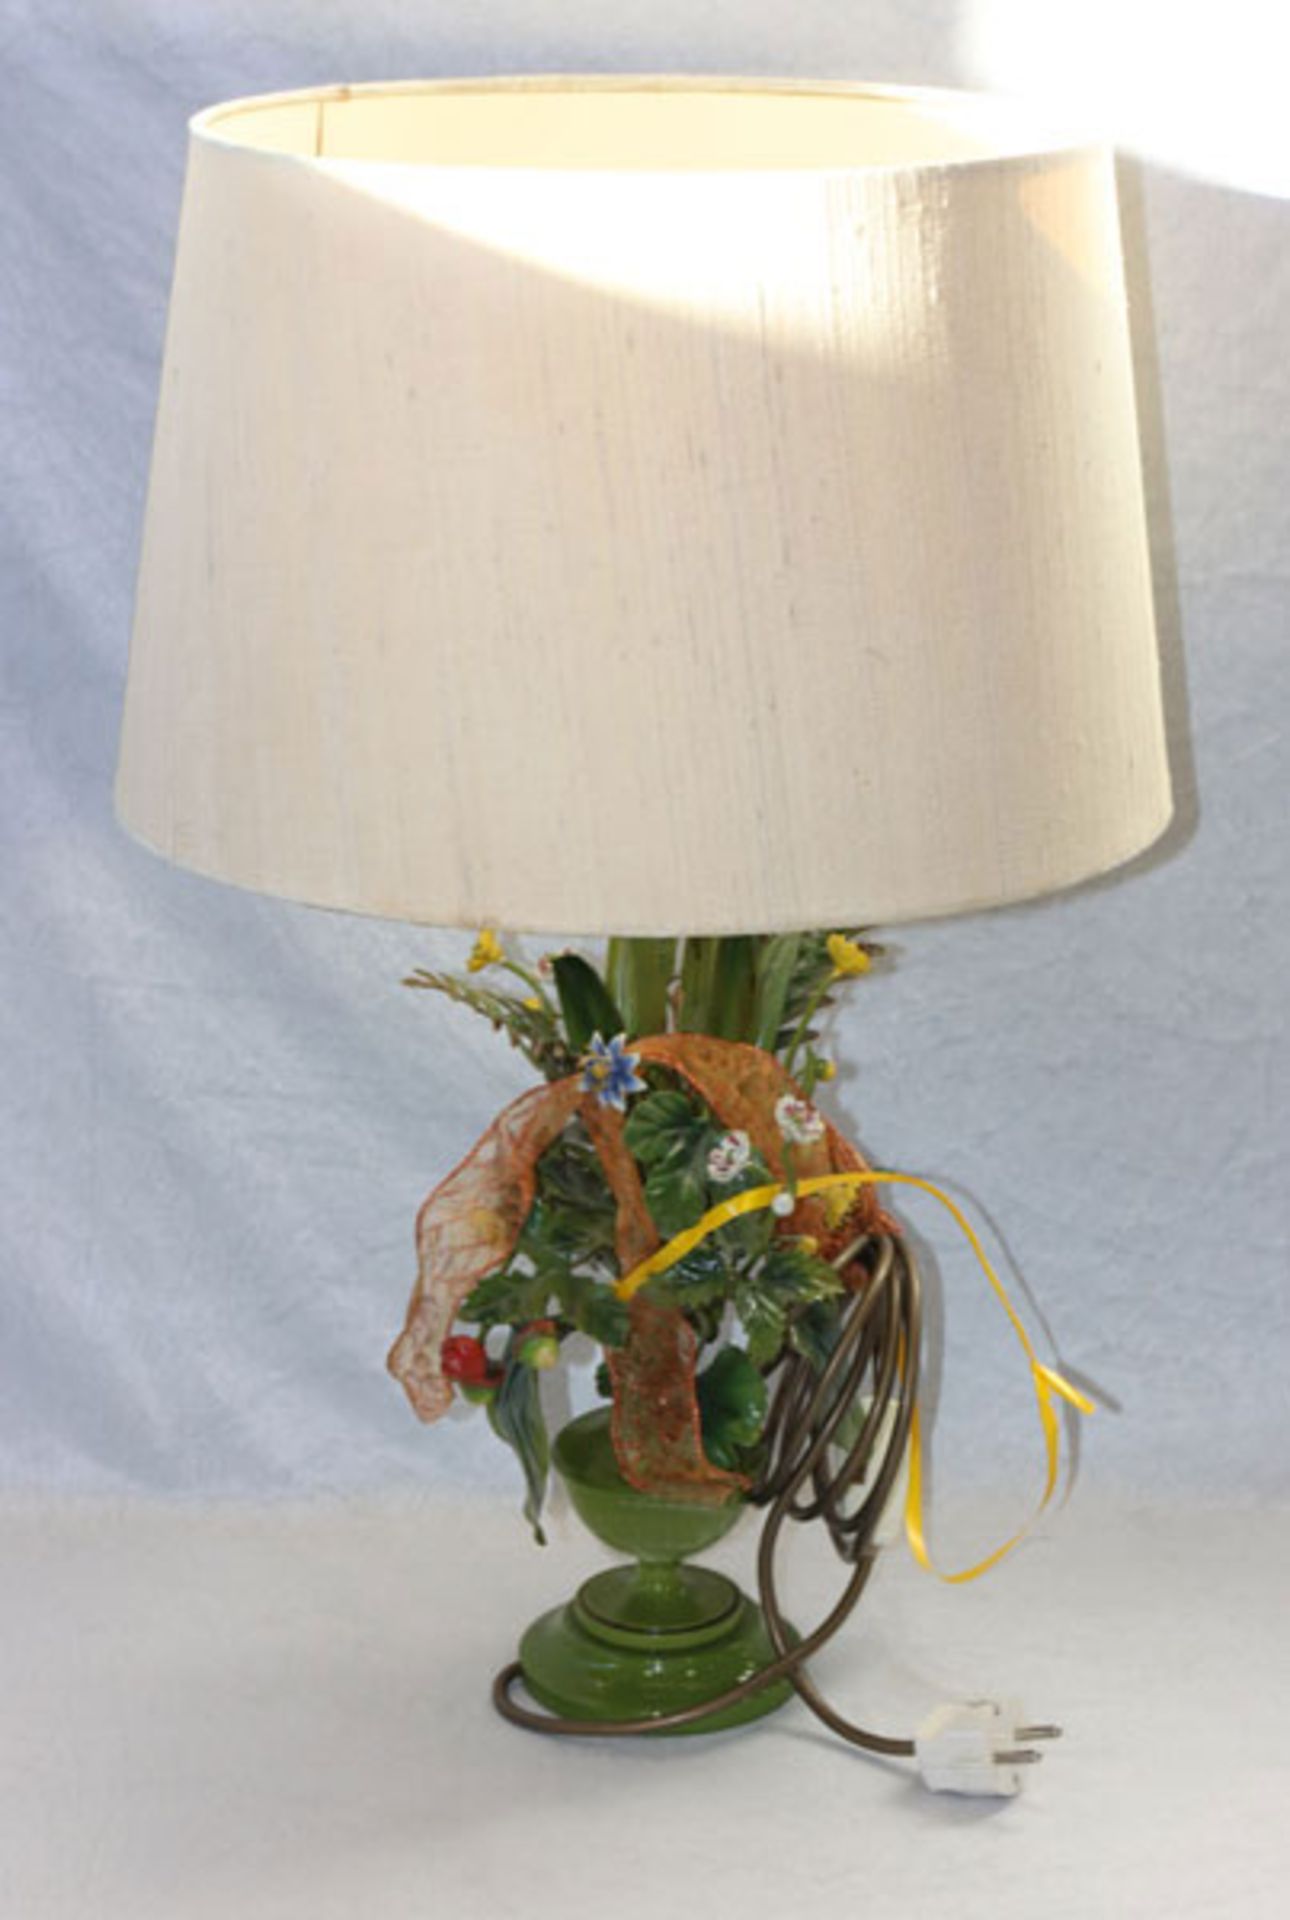 Tischlampe mit Metall-Lampenfuß in plastischem Blumen- und Erdbeerdekor, farbig bemalt, beiger